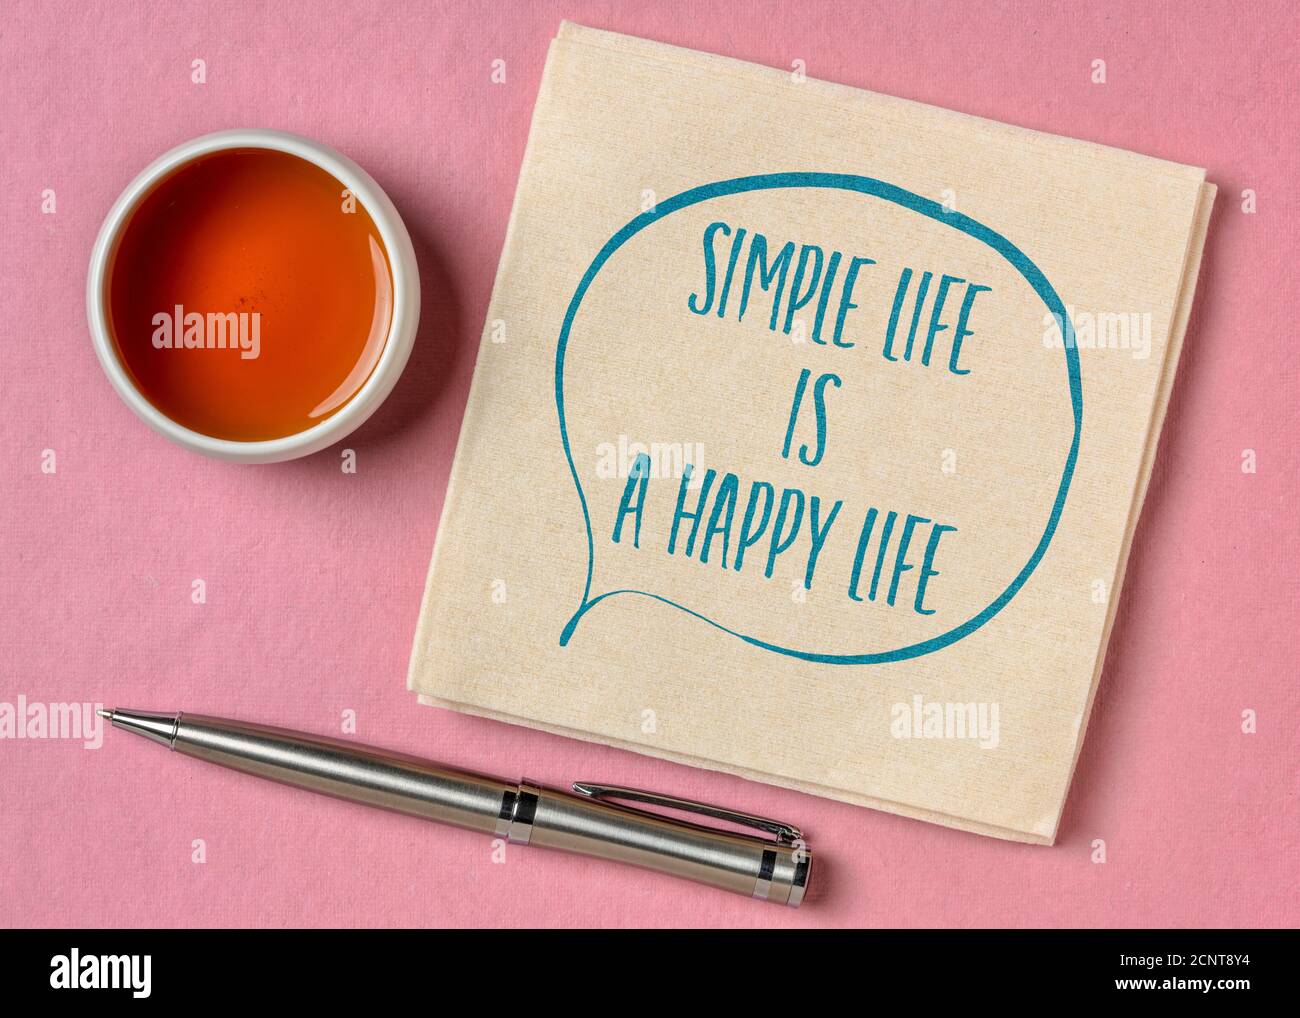 Einfaches Leben ist ein glückliches Leben inspirierende Zitat - Handschrift auf einer Serviette mit einer Tasse Tee, Glück, Erfolg und persönliche Entwicklung Konzept Stockfoto